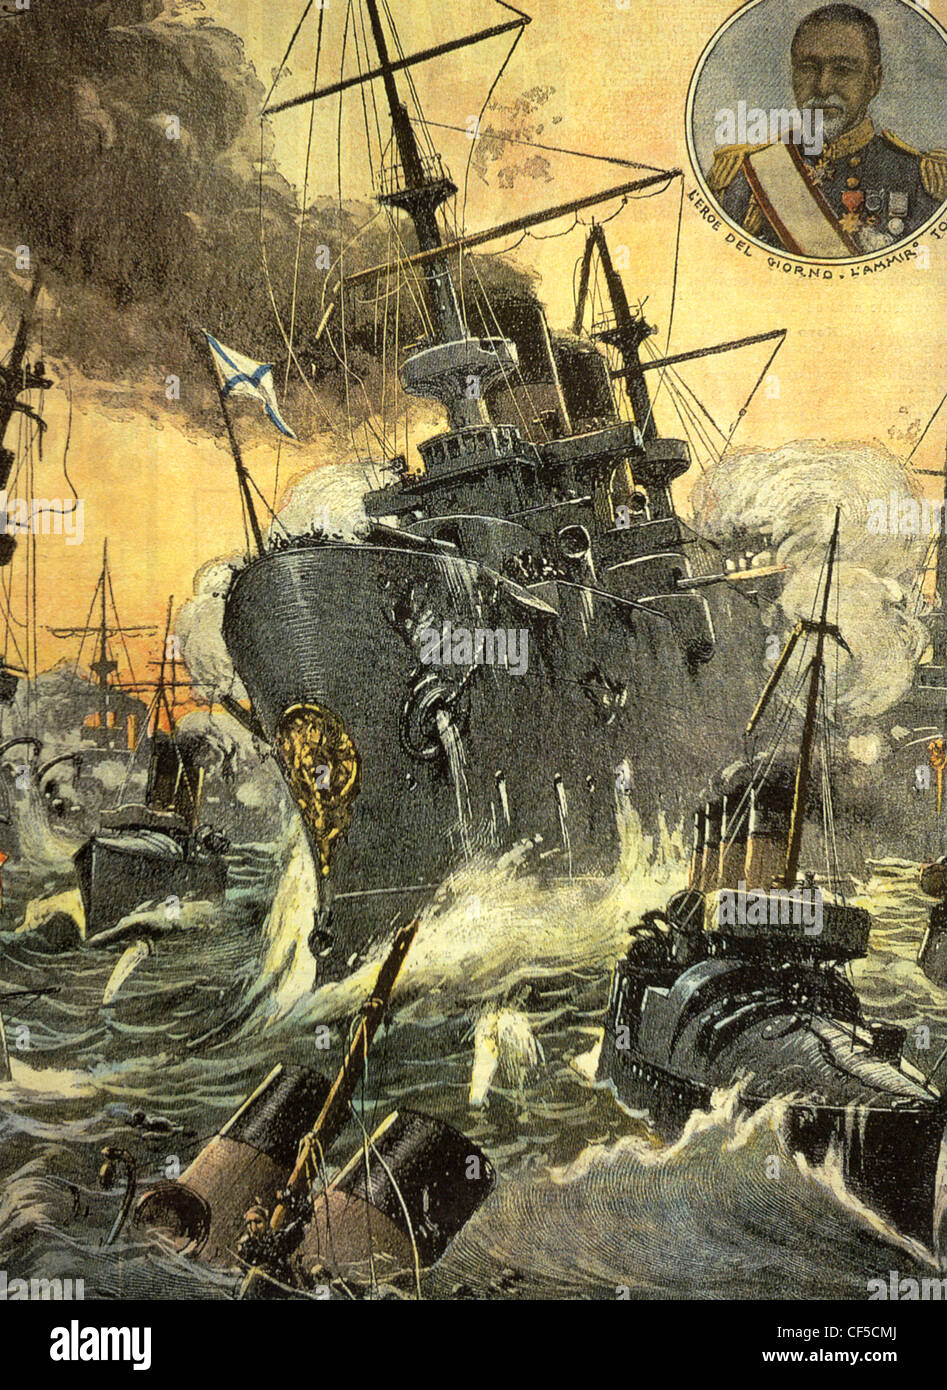 Russisch-japanischen Krieges 1905 französisches Magazin zeigt Schlacht von Tsushima 27-8 Mai 1905 mit Admiral Togo als "Held des Tages" angezeigt Stockfoto